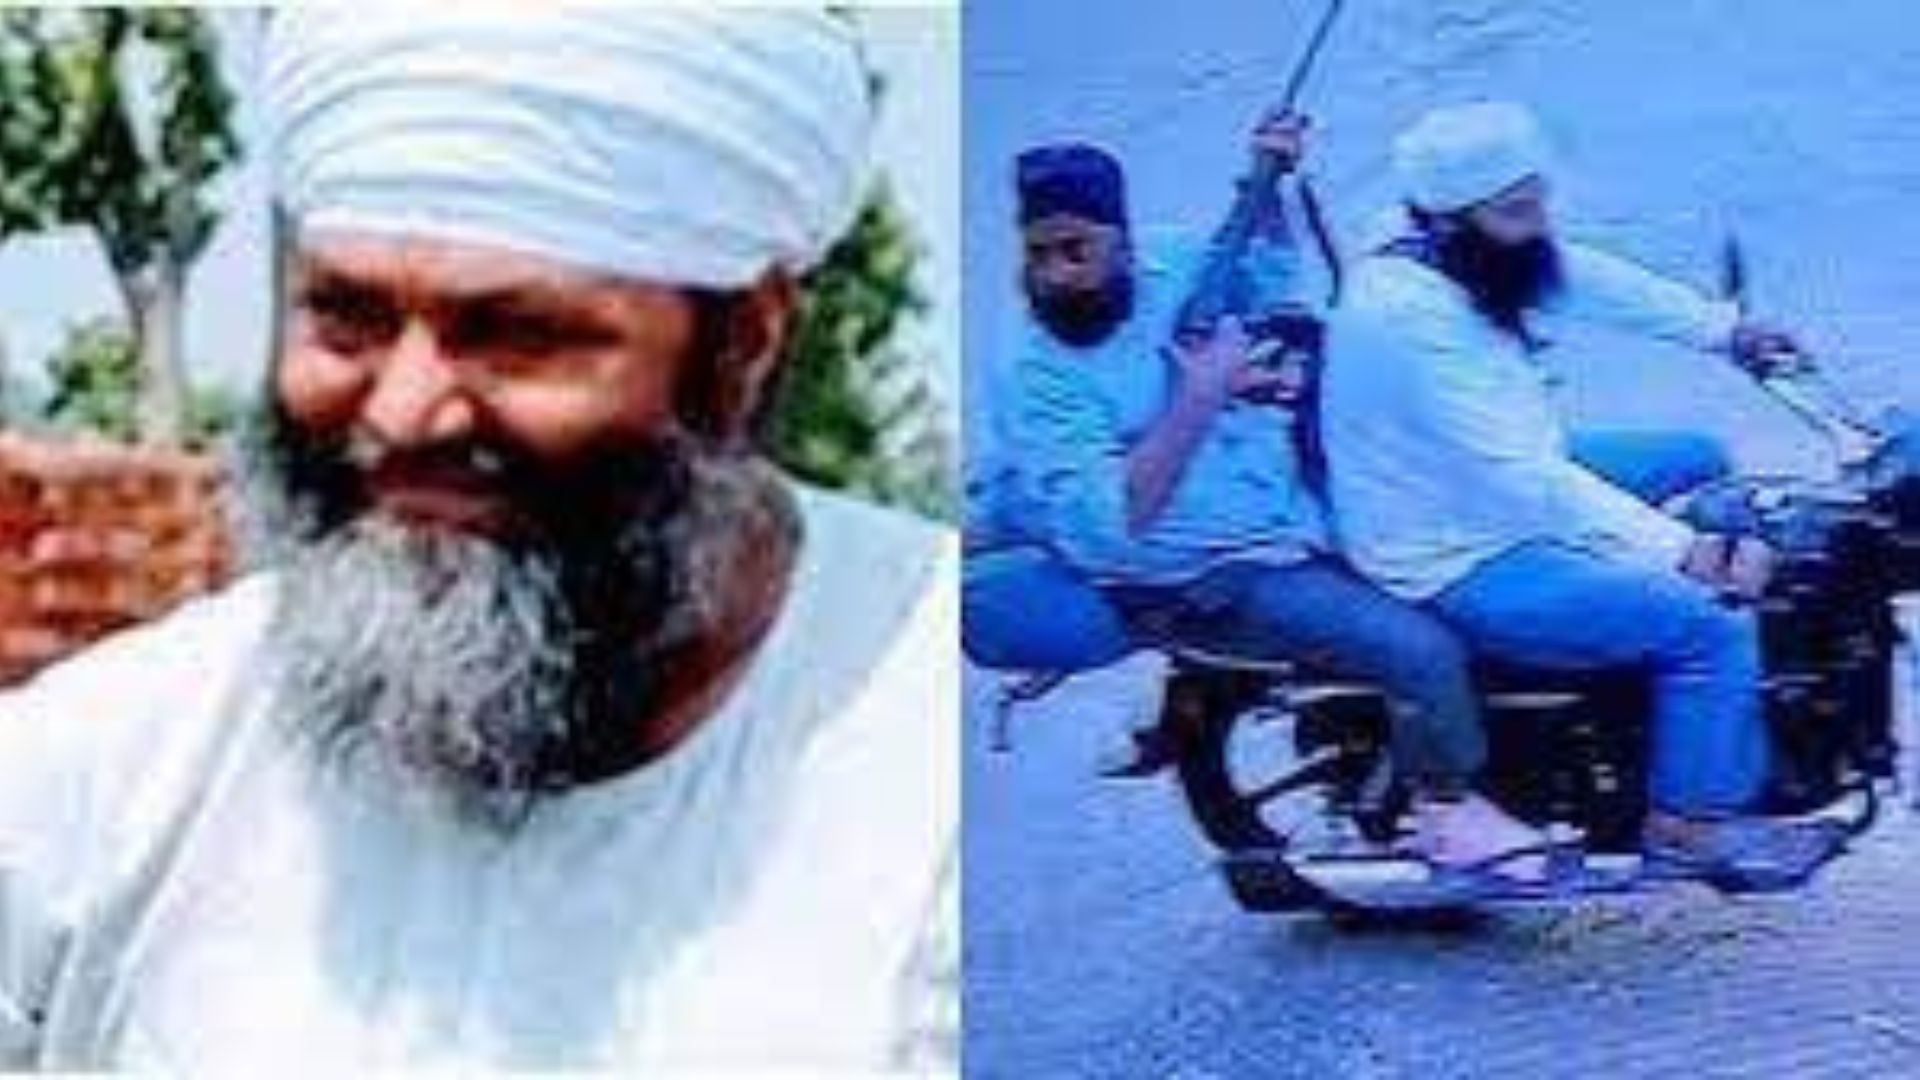 Kar Seva Pramukh Baba Tarsem Singh (L) who was shot dead